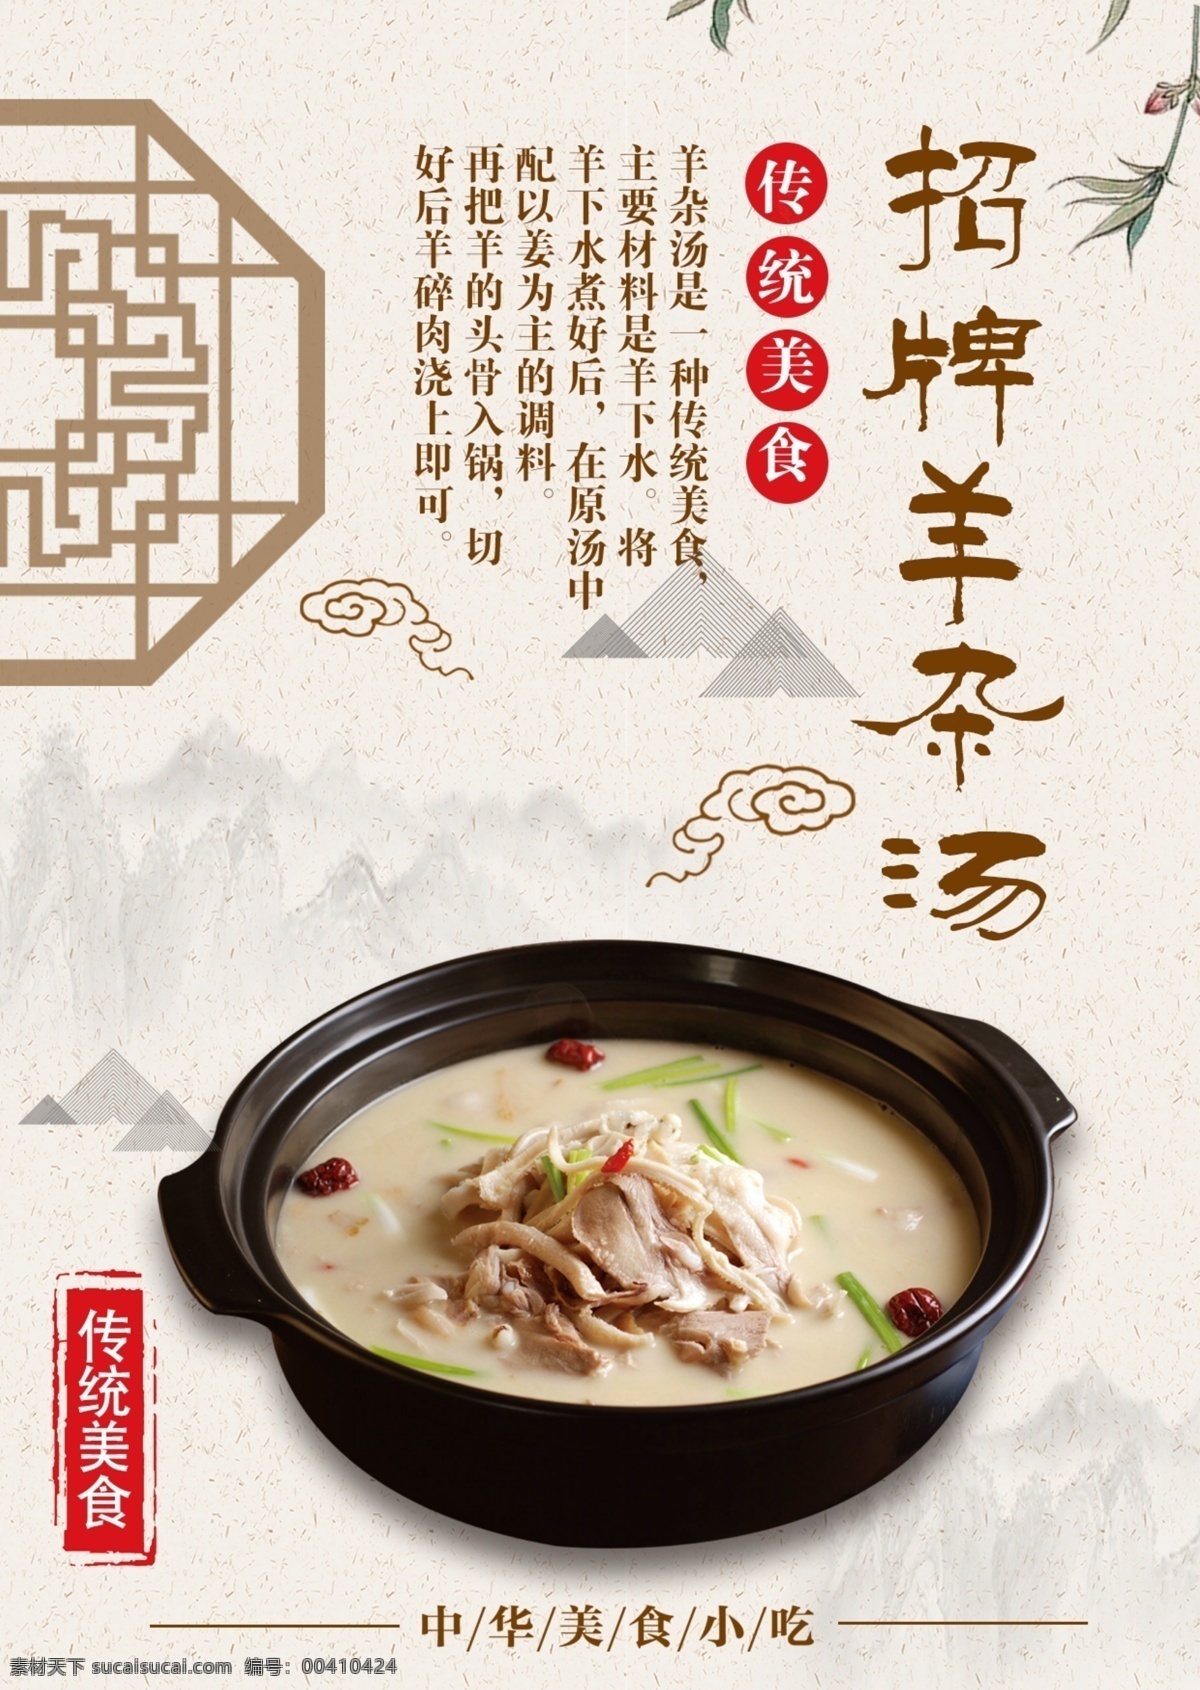 夏季 美食 中国 风 羊杂 汤 菜谱 美味 特产 简约 中国风 特色 羊杂汤 菜单